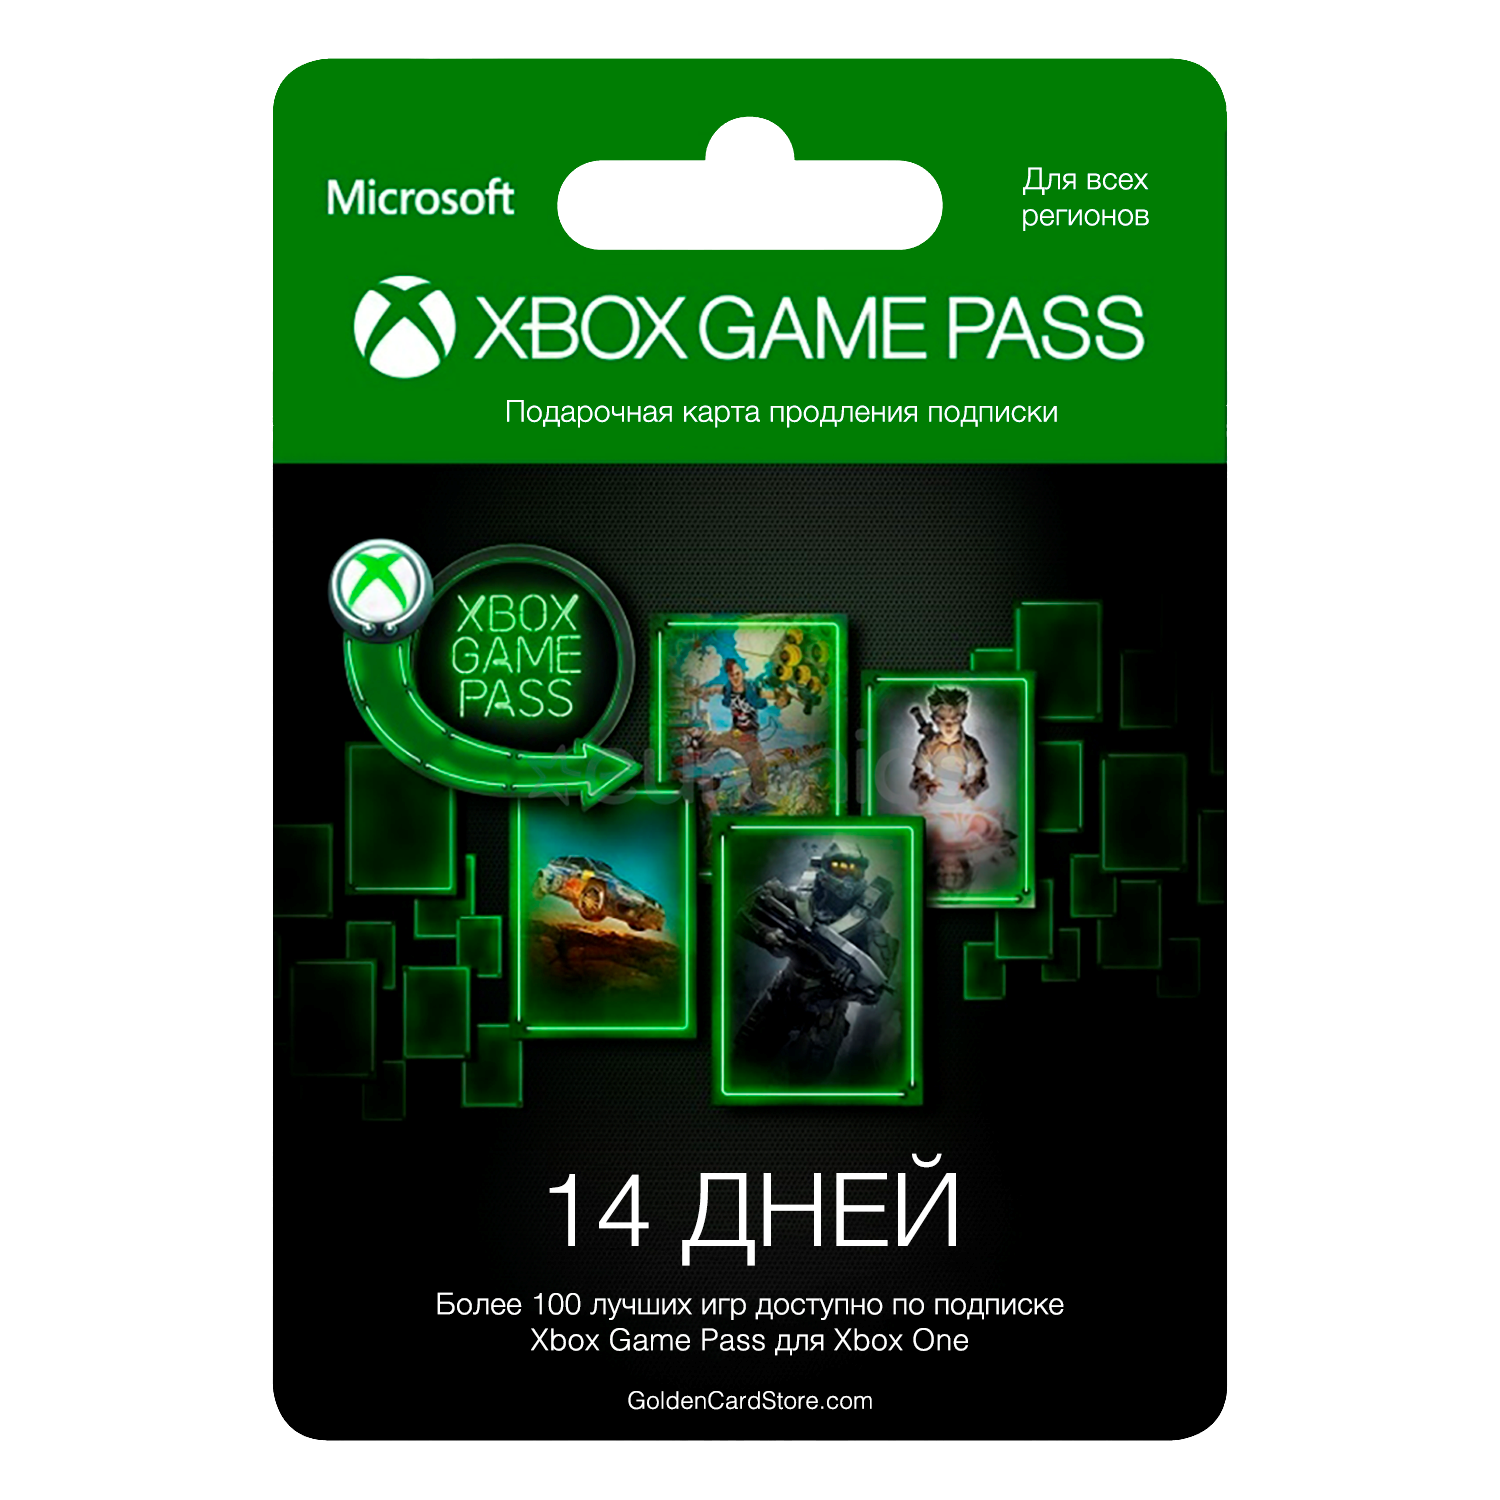 Игры по подписке х бокс. Подписка Xbox game Pass. Карта для Xbox game Pass. Microsoft Xbox подписка. Карточка гейм пасс.